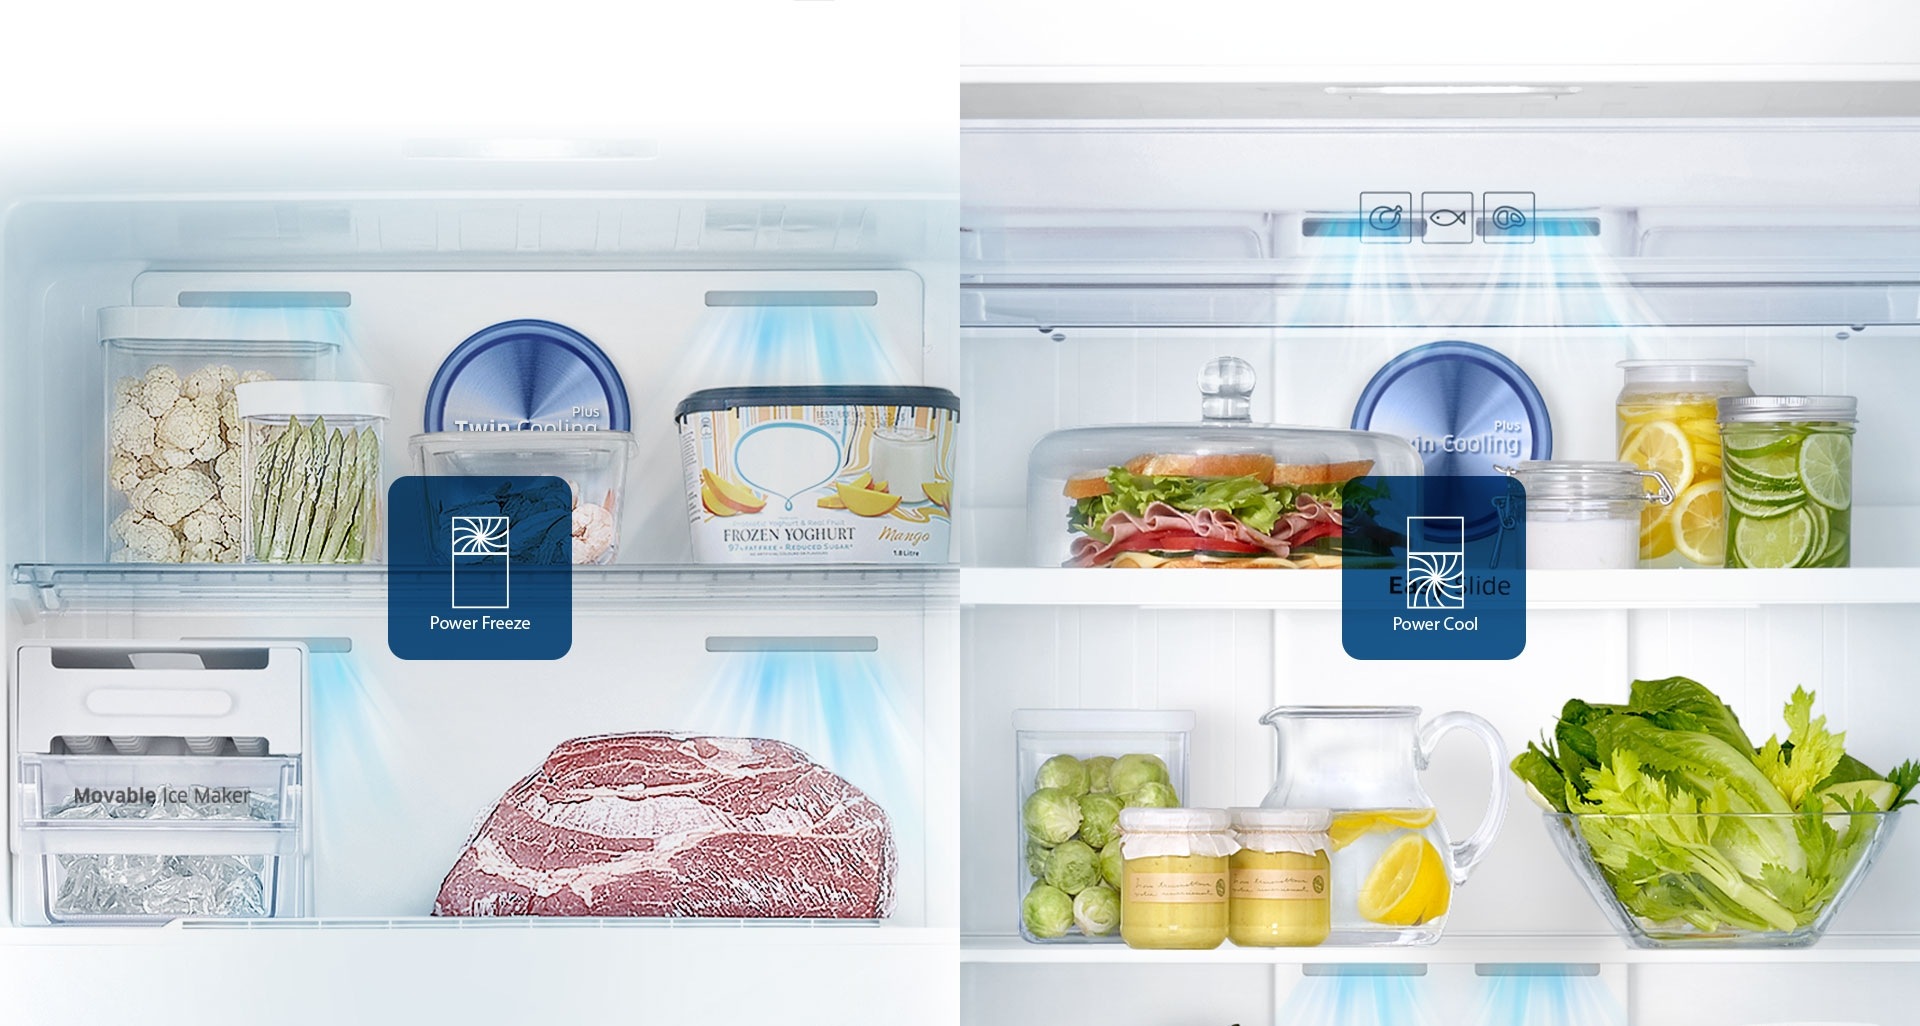 Refrigeradora Samsung Top Freezer - Hace hielo y enfría bebidas